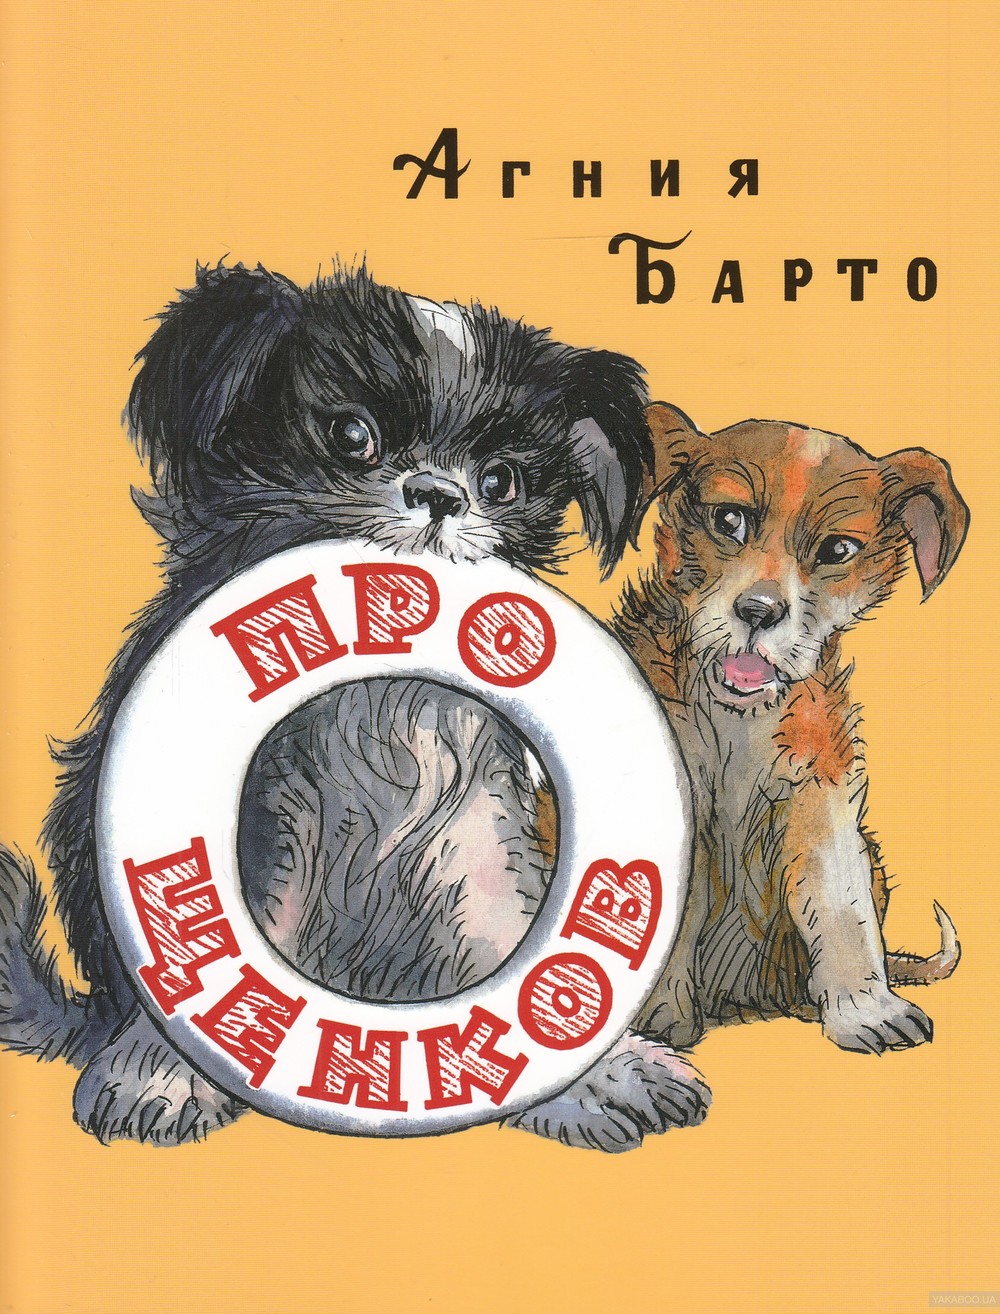 بچوں کے لیے کتوں کے بارے میں کتابیں - چھوٹوں کو تجویز کرنے کے قابل عنوانات!